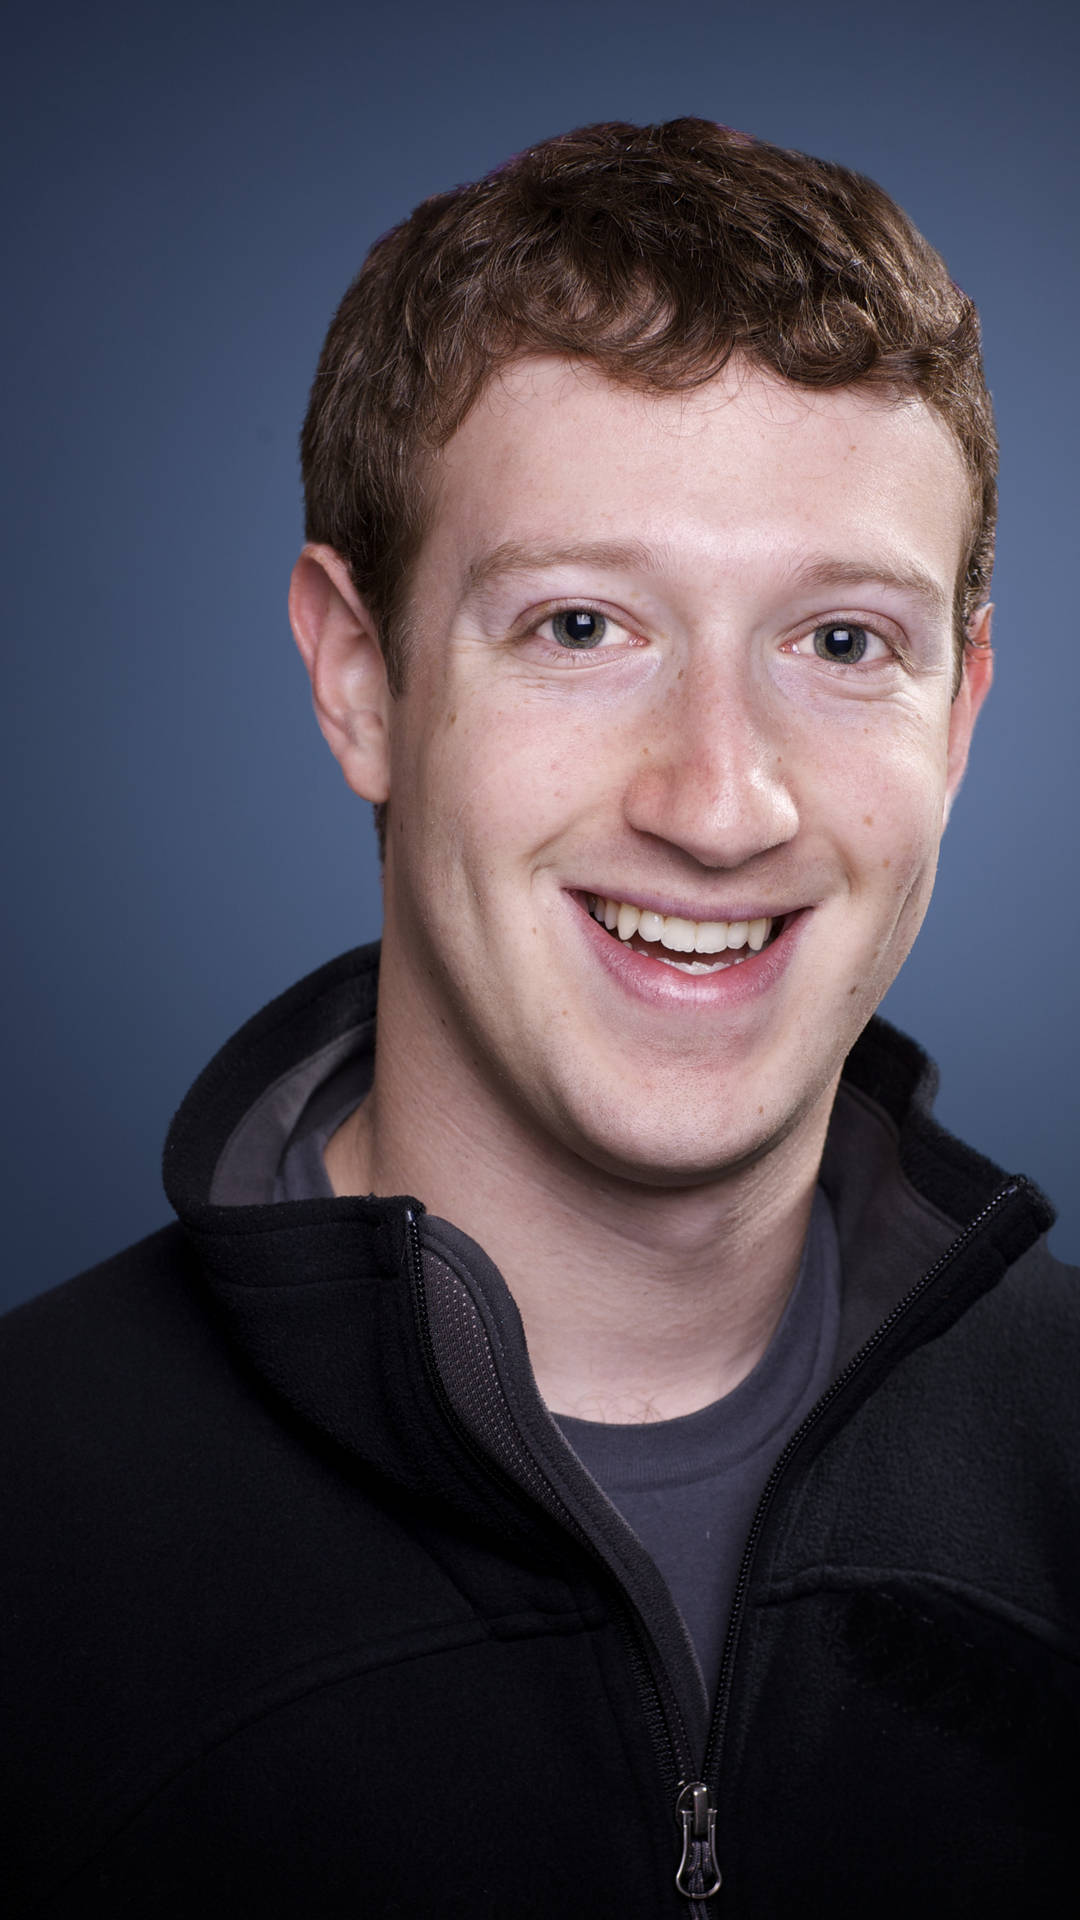 Mark Zuckerberg Portrait Background